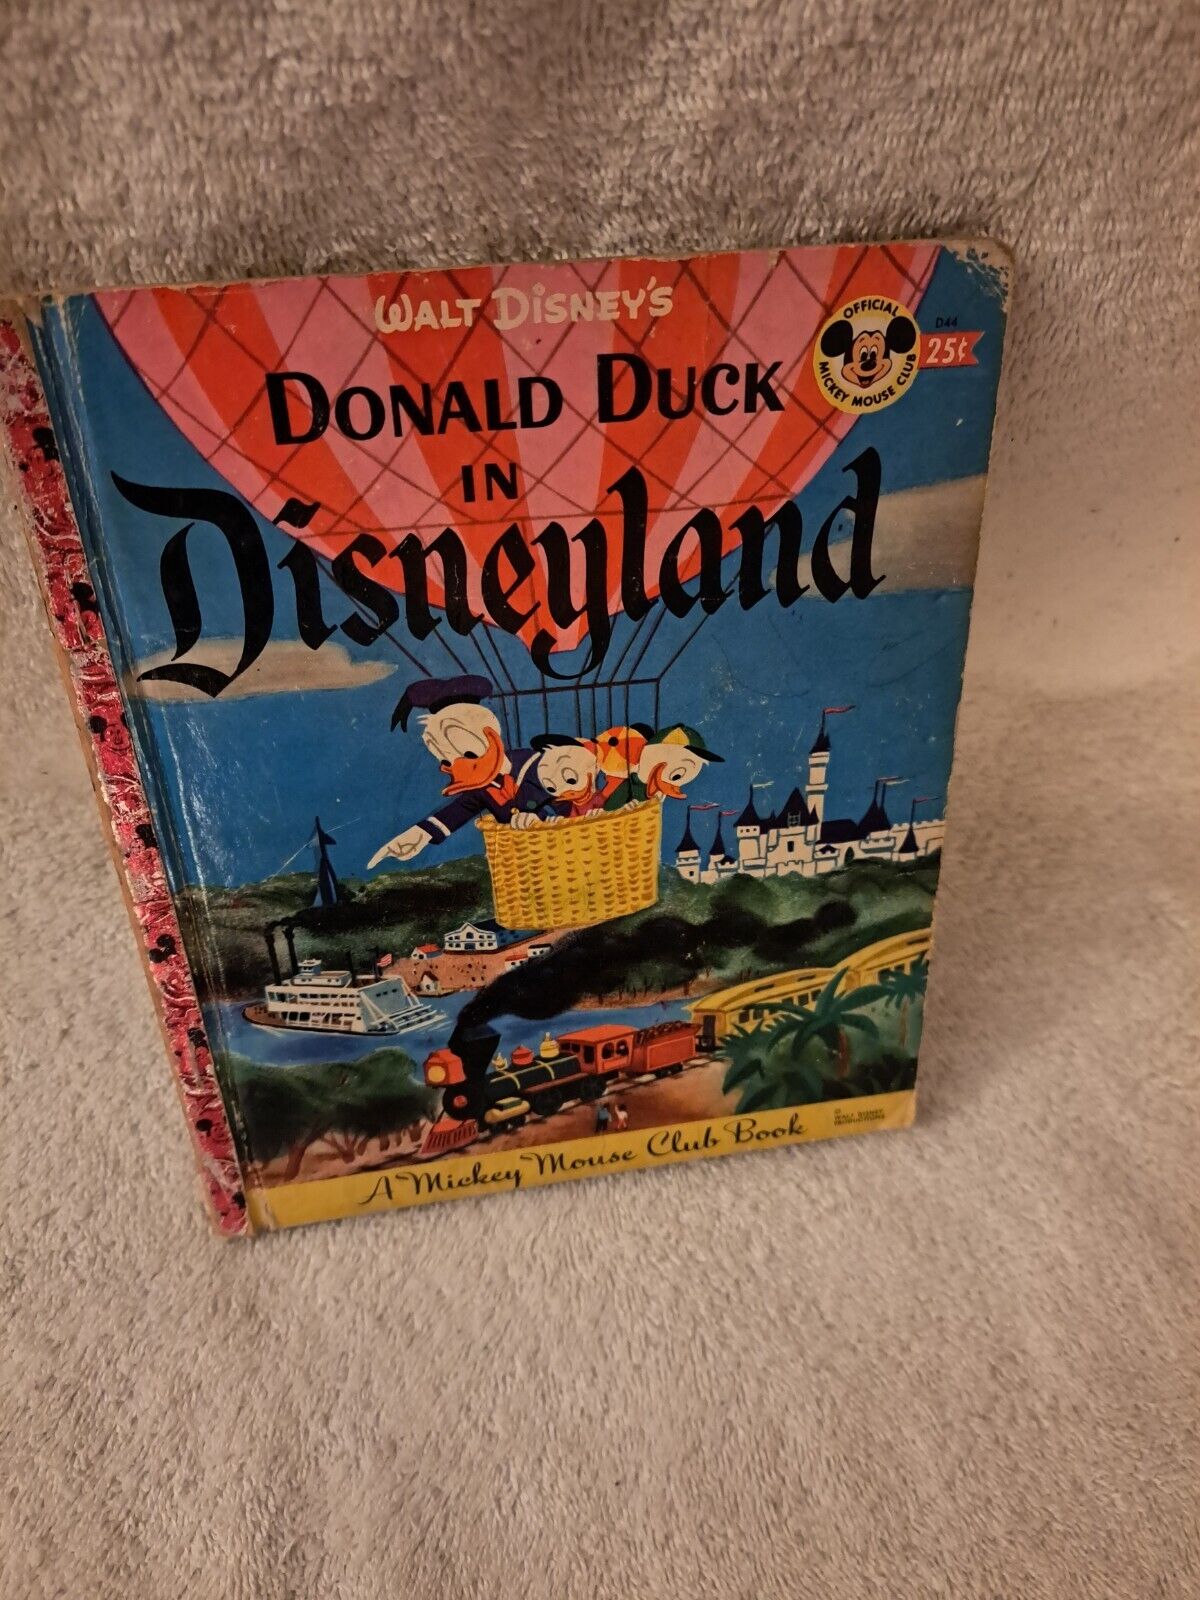 1955 Walt Disney Donald Duck in Disneyland